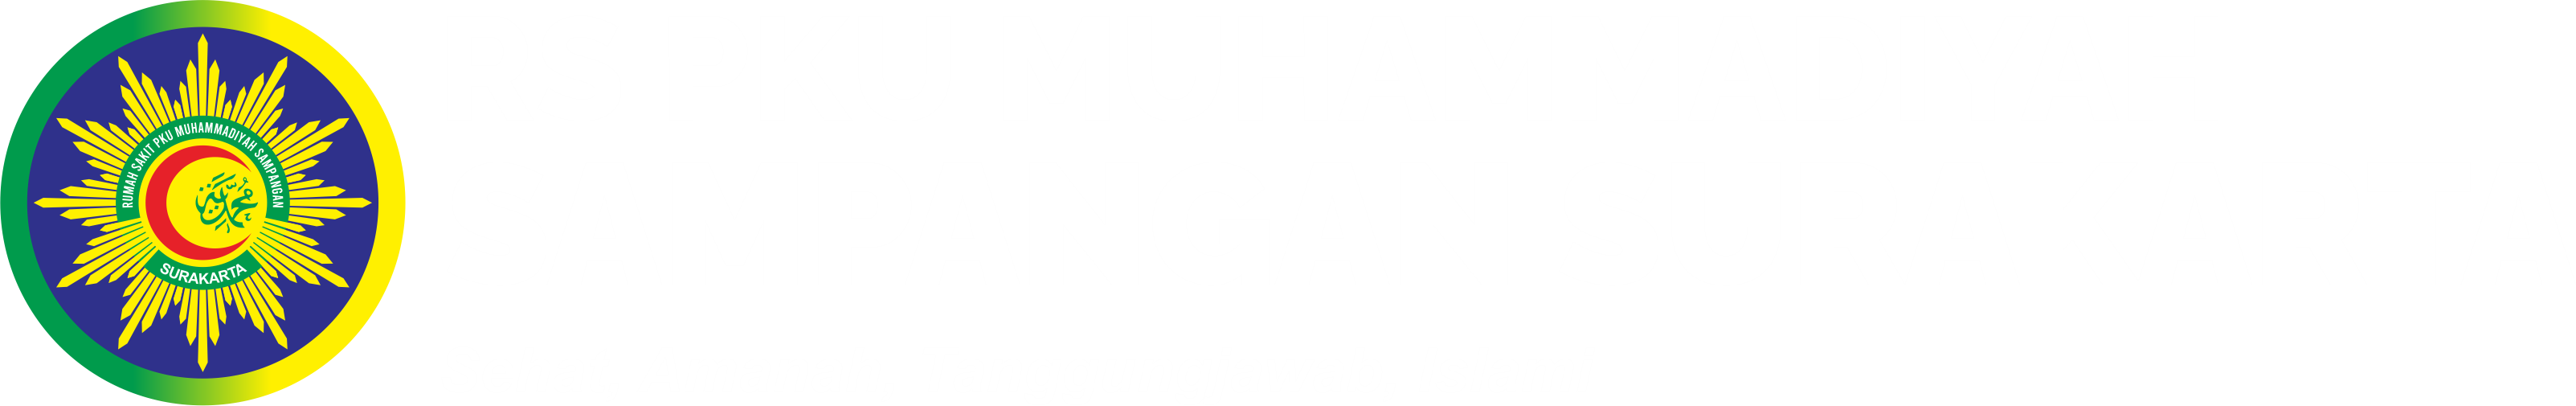 logo pku sampangan